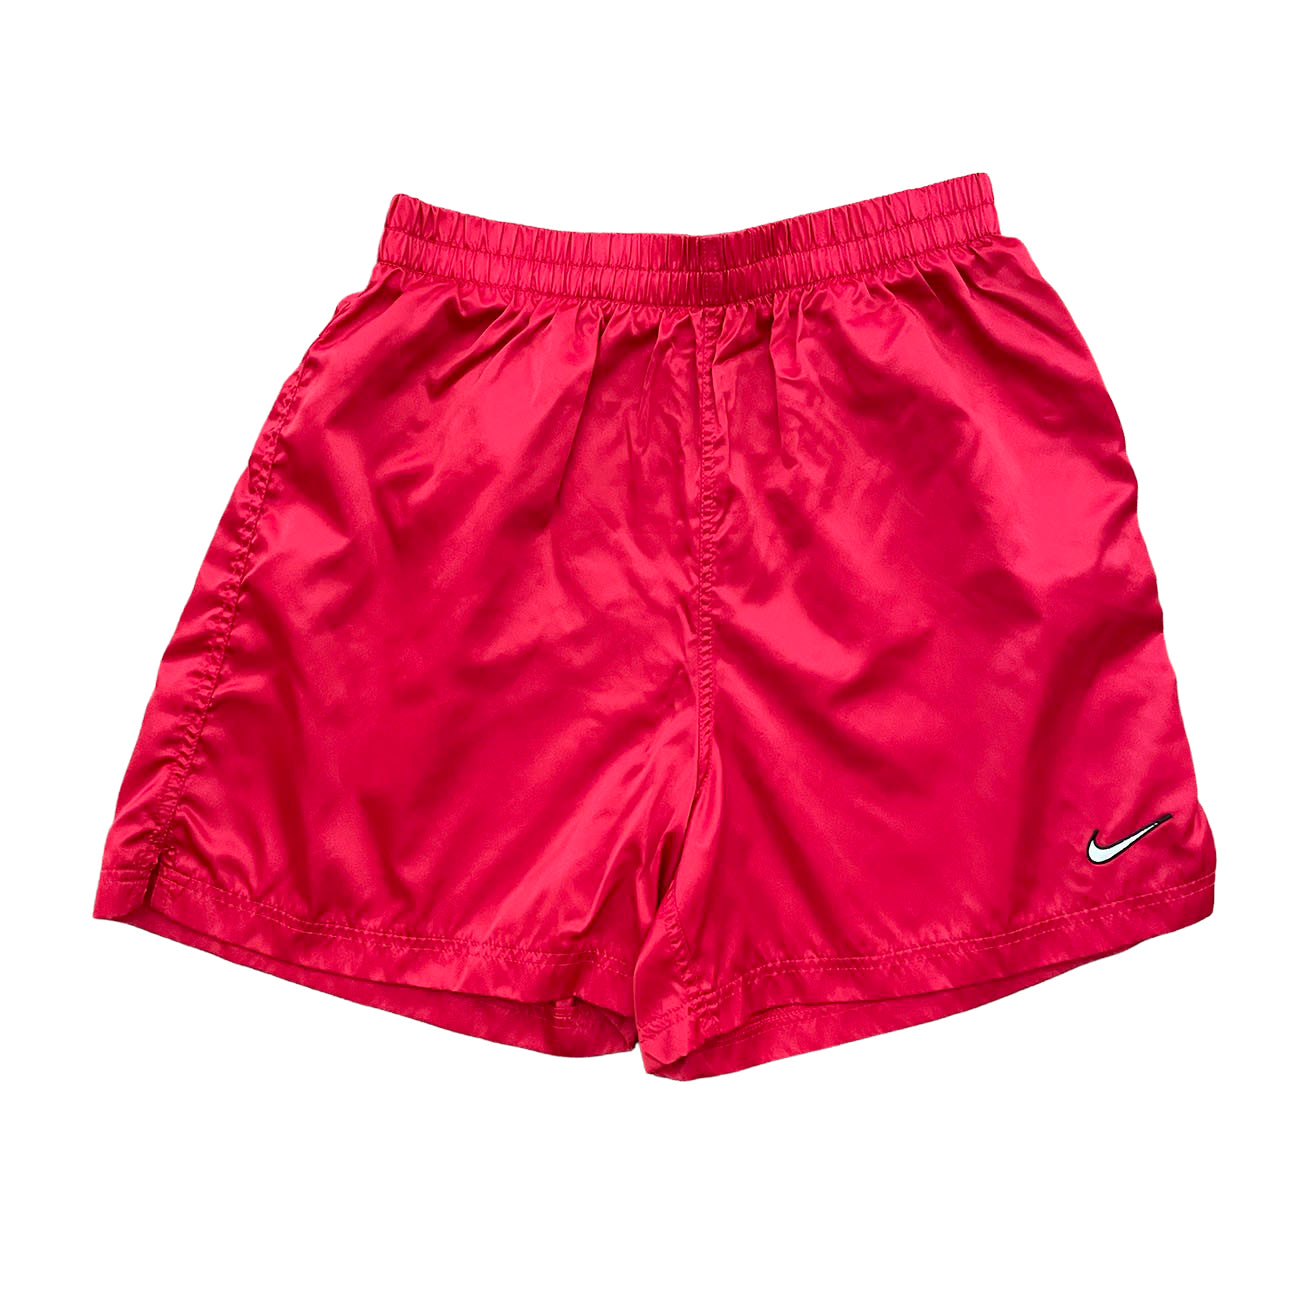 Nike Soccer Shorts - L